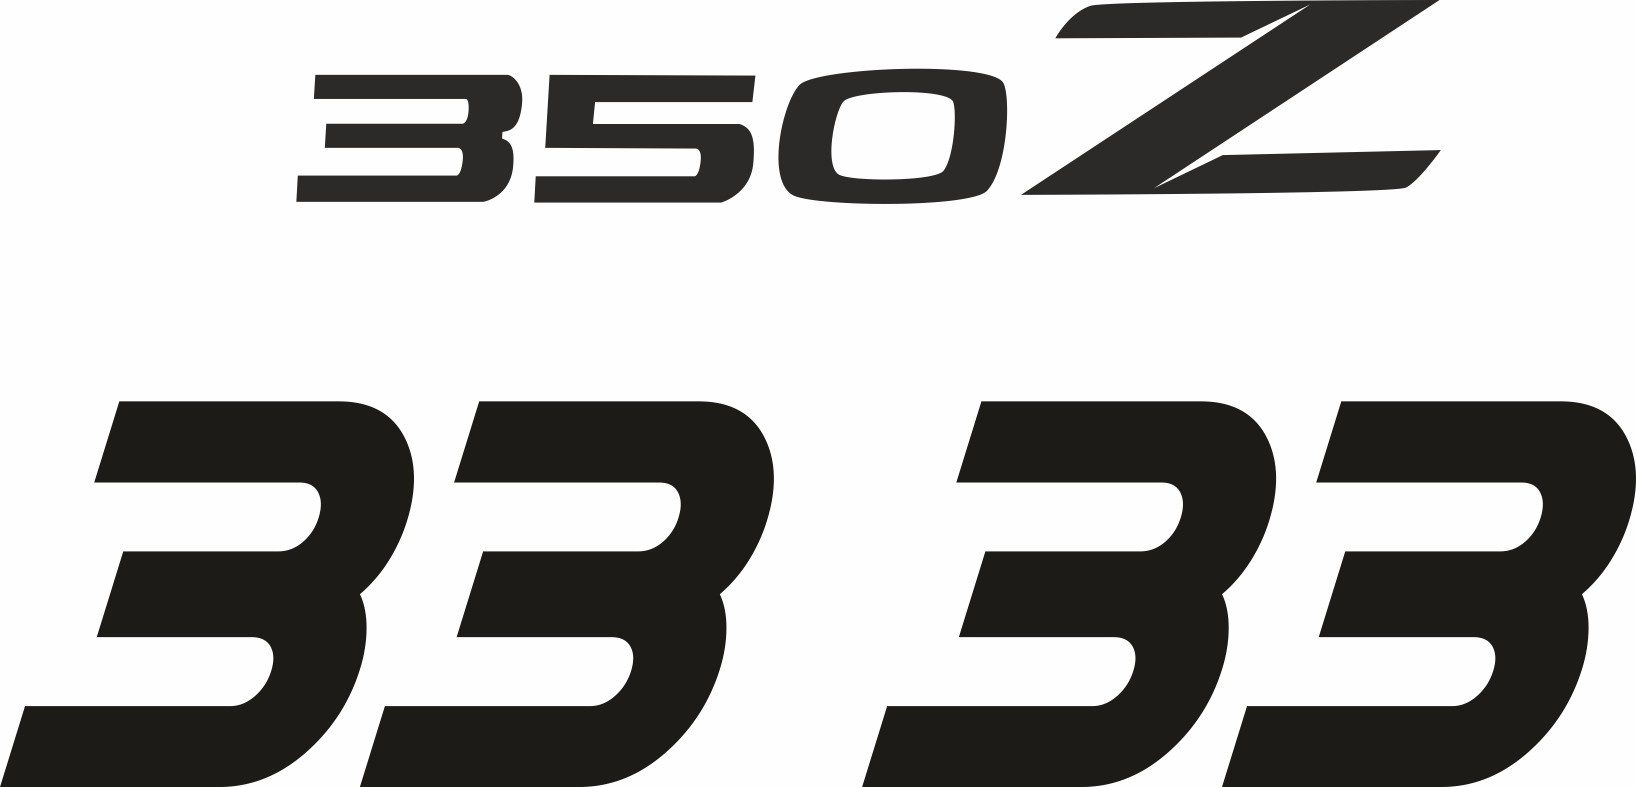 Naklejki na samochód Nissan 350Z 370Z Nismo STICKER DECALS STRIPES